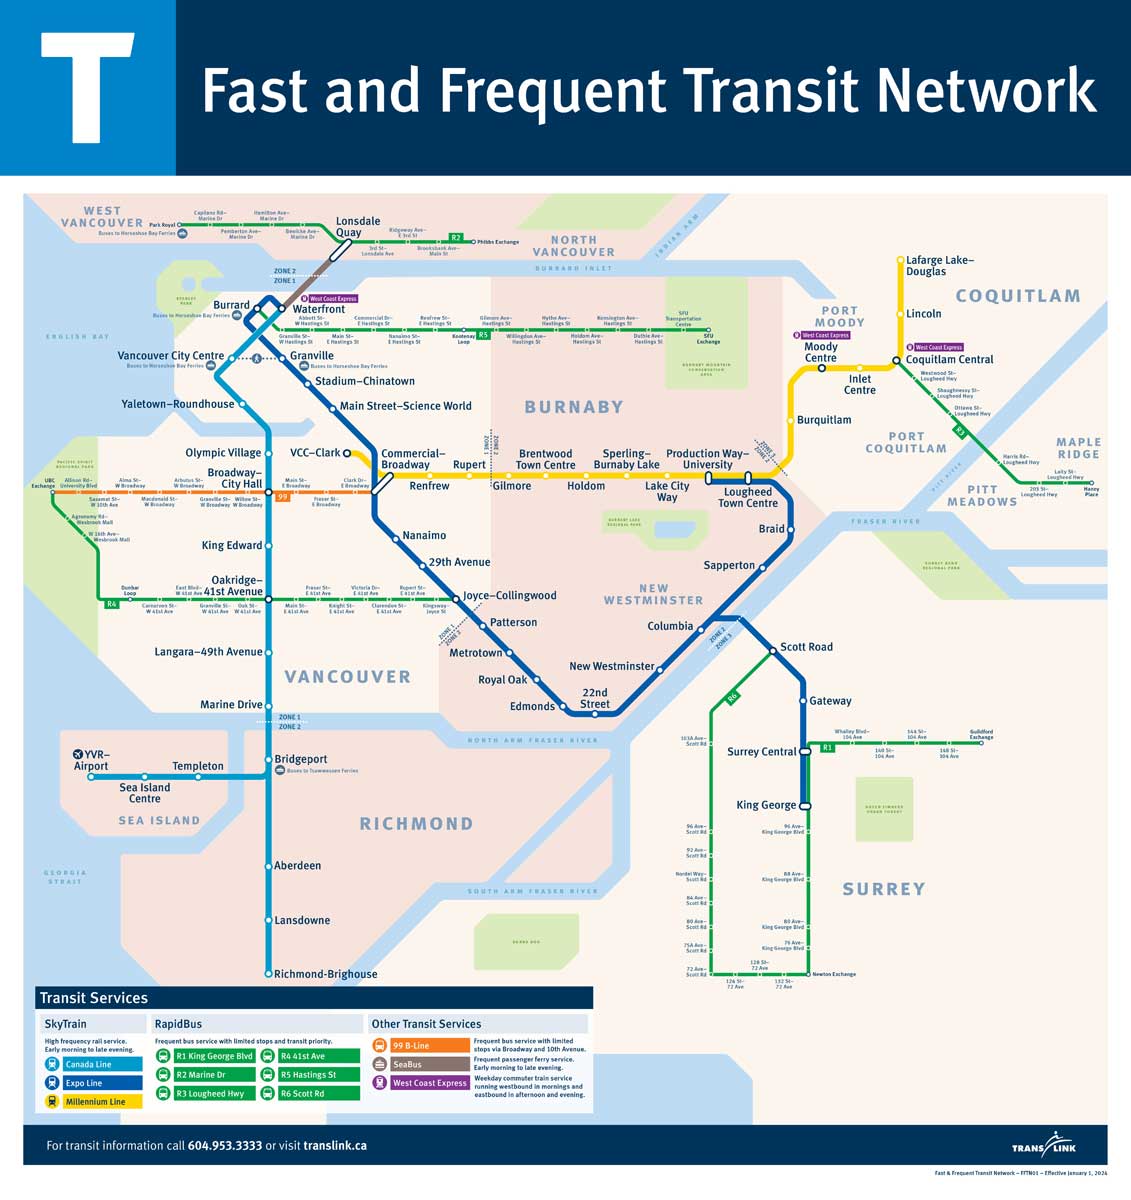 トランスリンクのスカイトレインとシーバス、快速バスの路線図（トランスリンクのホームページから）